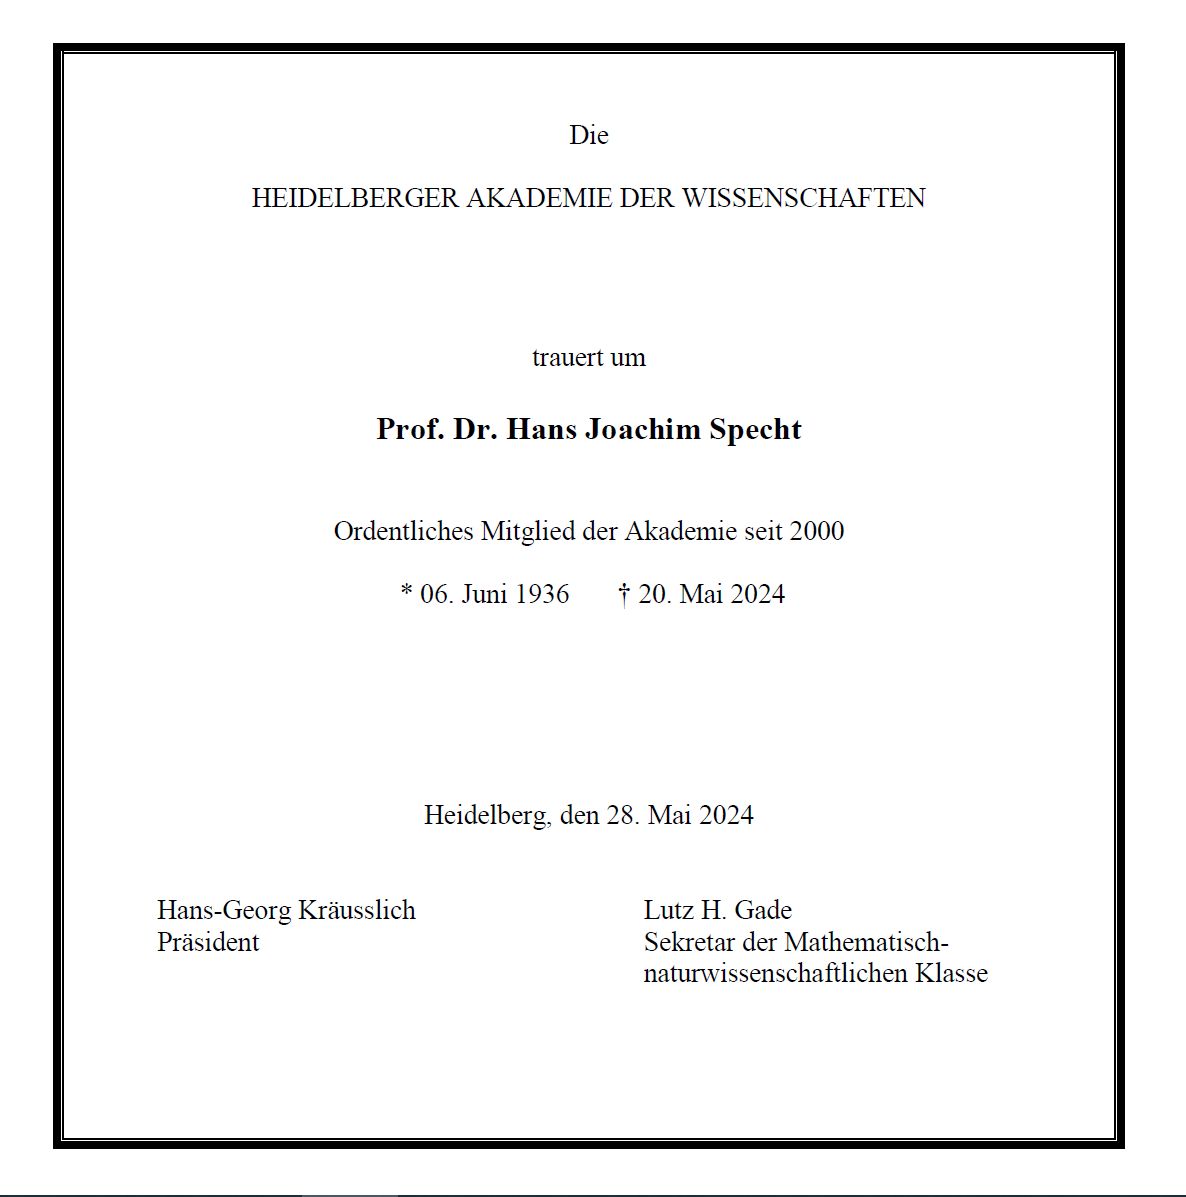 Traueranzeige der Akademie, die um Hans Joachim Specht trauert, der seit 2000 Ordentliches Mitglied war.